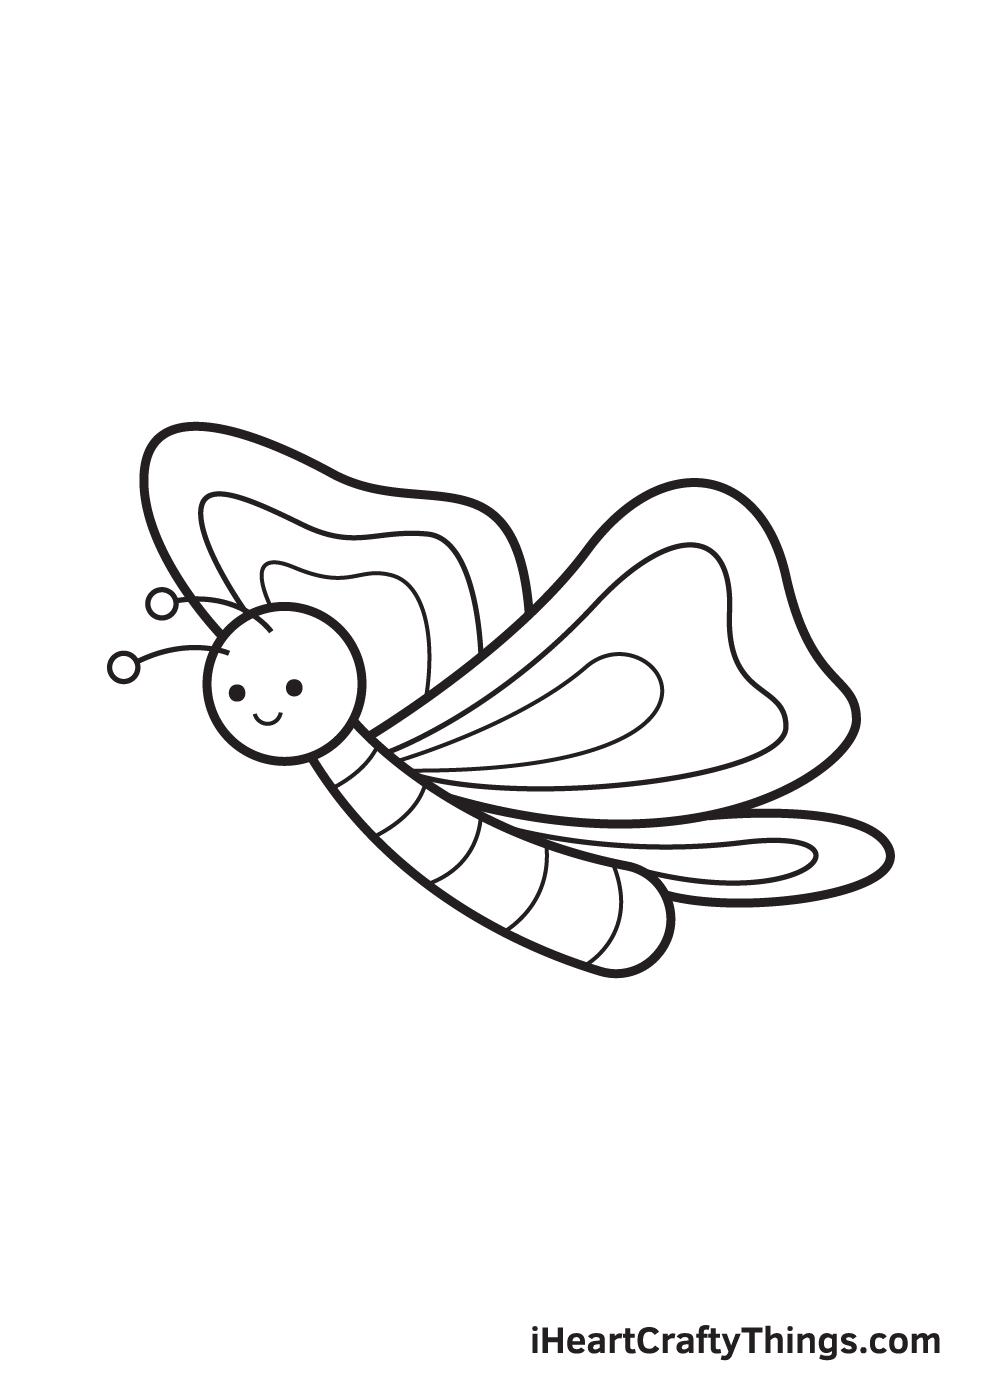 Butterfly DRAWING – STEP 9 - Hướng dẫn chi tiết cách vẽ con bướm đơn giản với 9 bước cơ bản